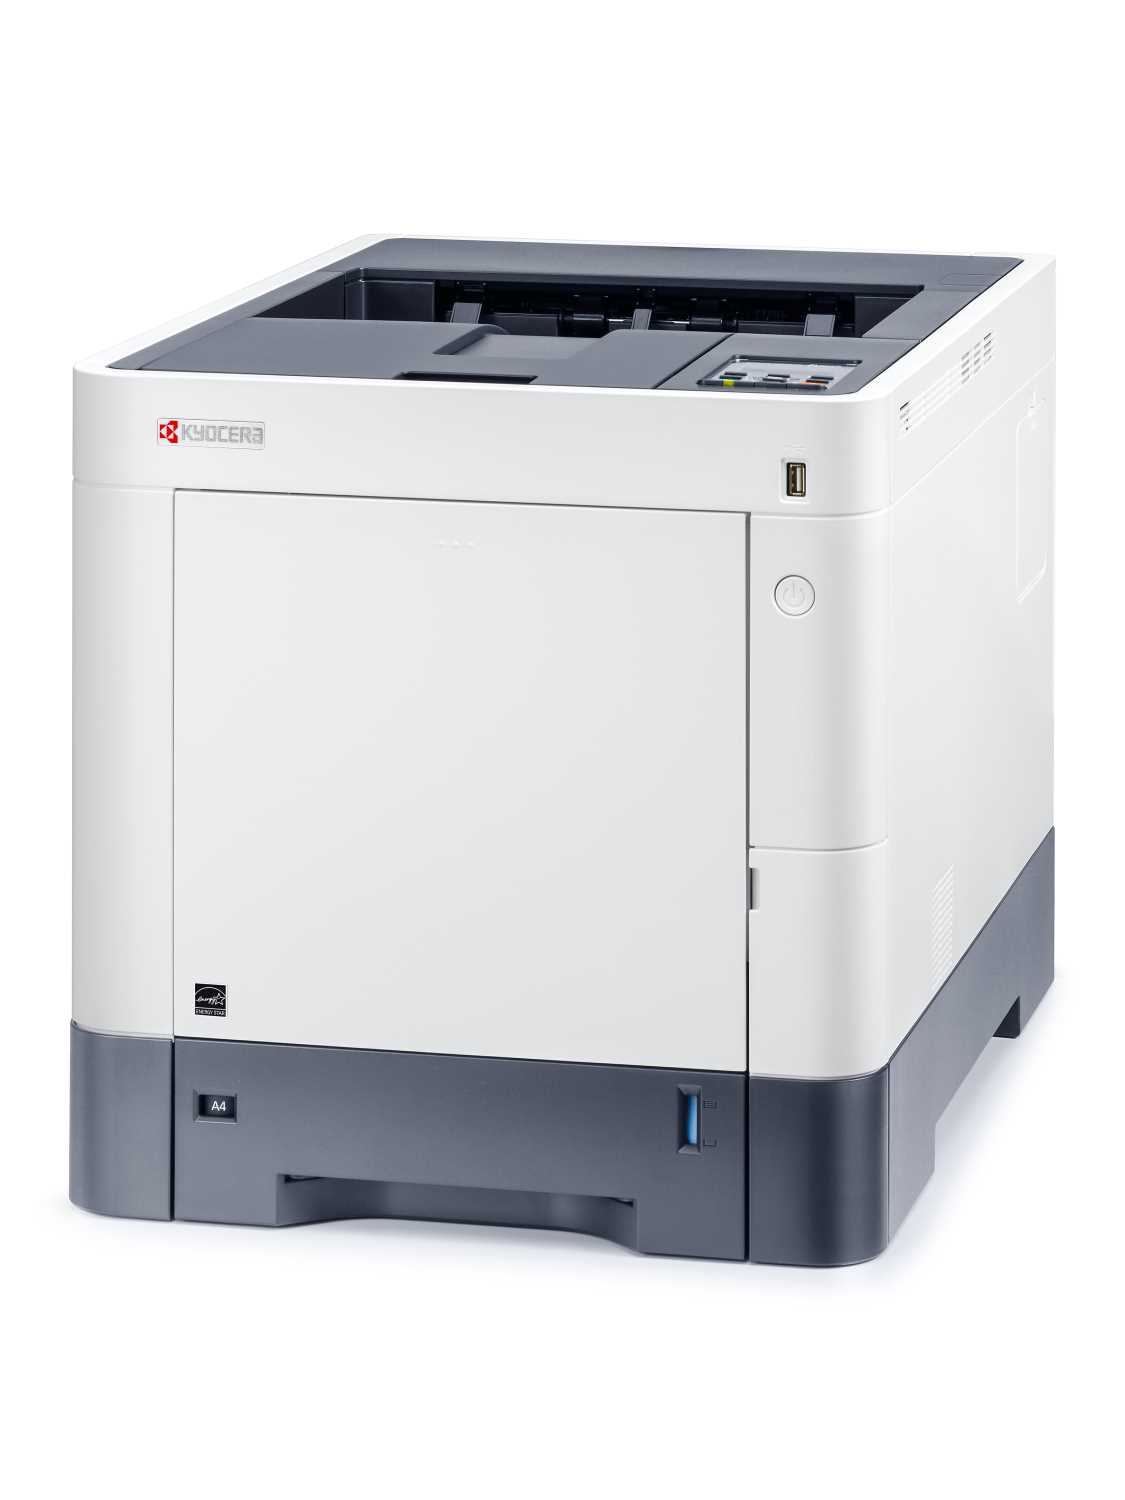 Цветной лазерный принтер Kyocera P6230cdn (A4, 1200 dpi, 1024 Mb, 30 ppm,  дуплекс, USB 2.0, Gigabit Ethernet, тонер) продажа только с доп. тонерами TK-5270K/Y/M/C